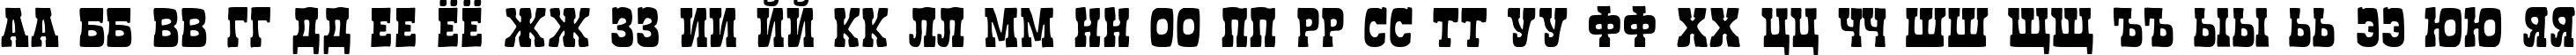 Пример написания русского алфавита шрифтом Boncegro FF 4F